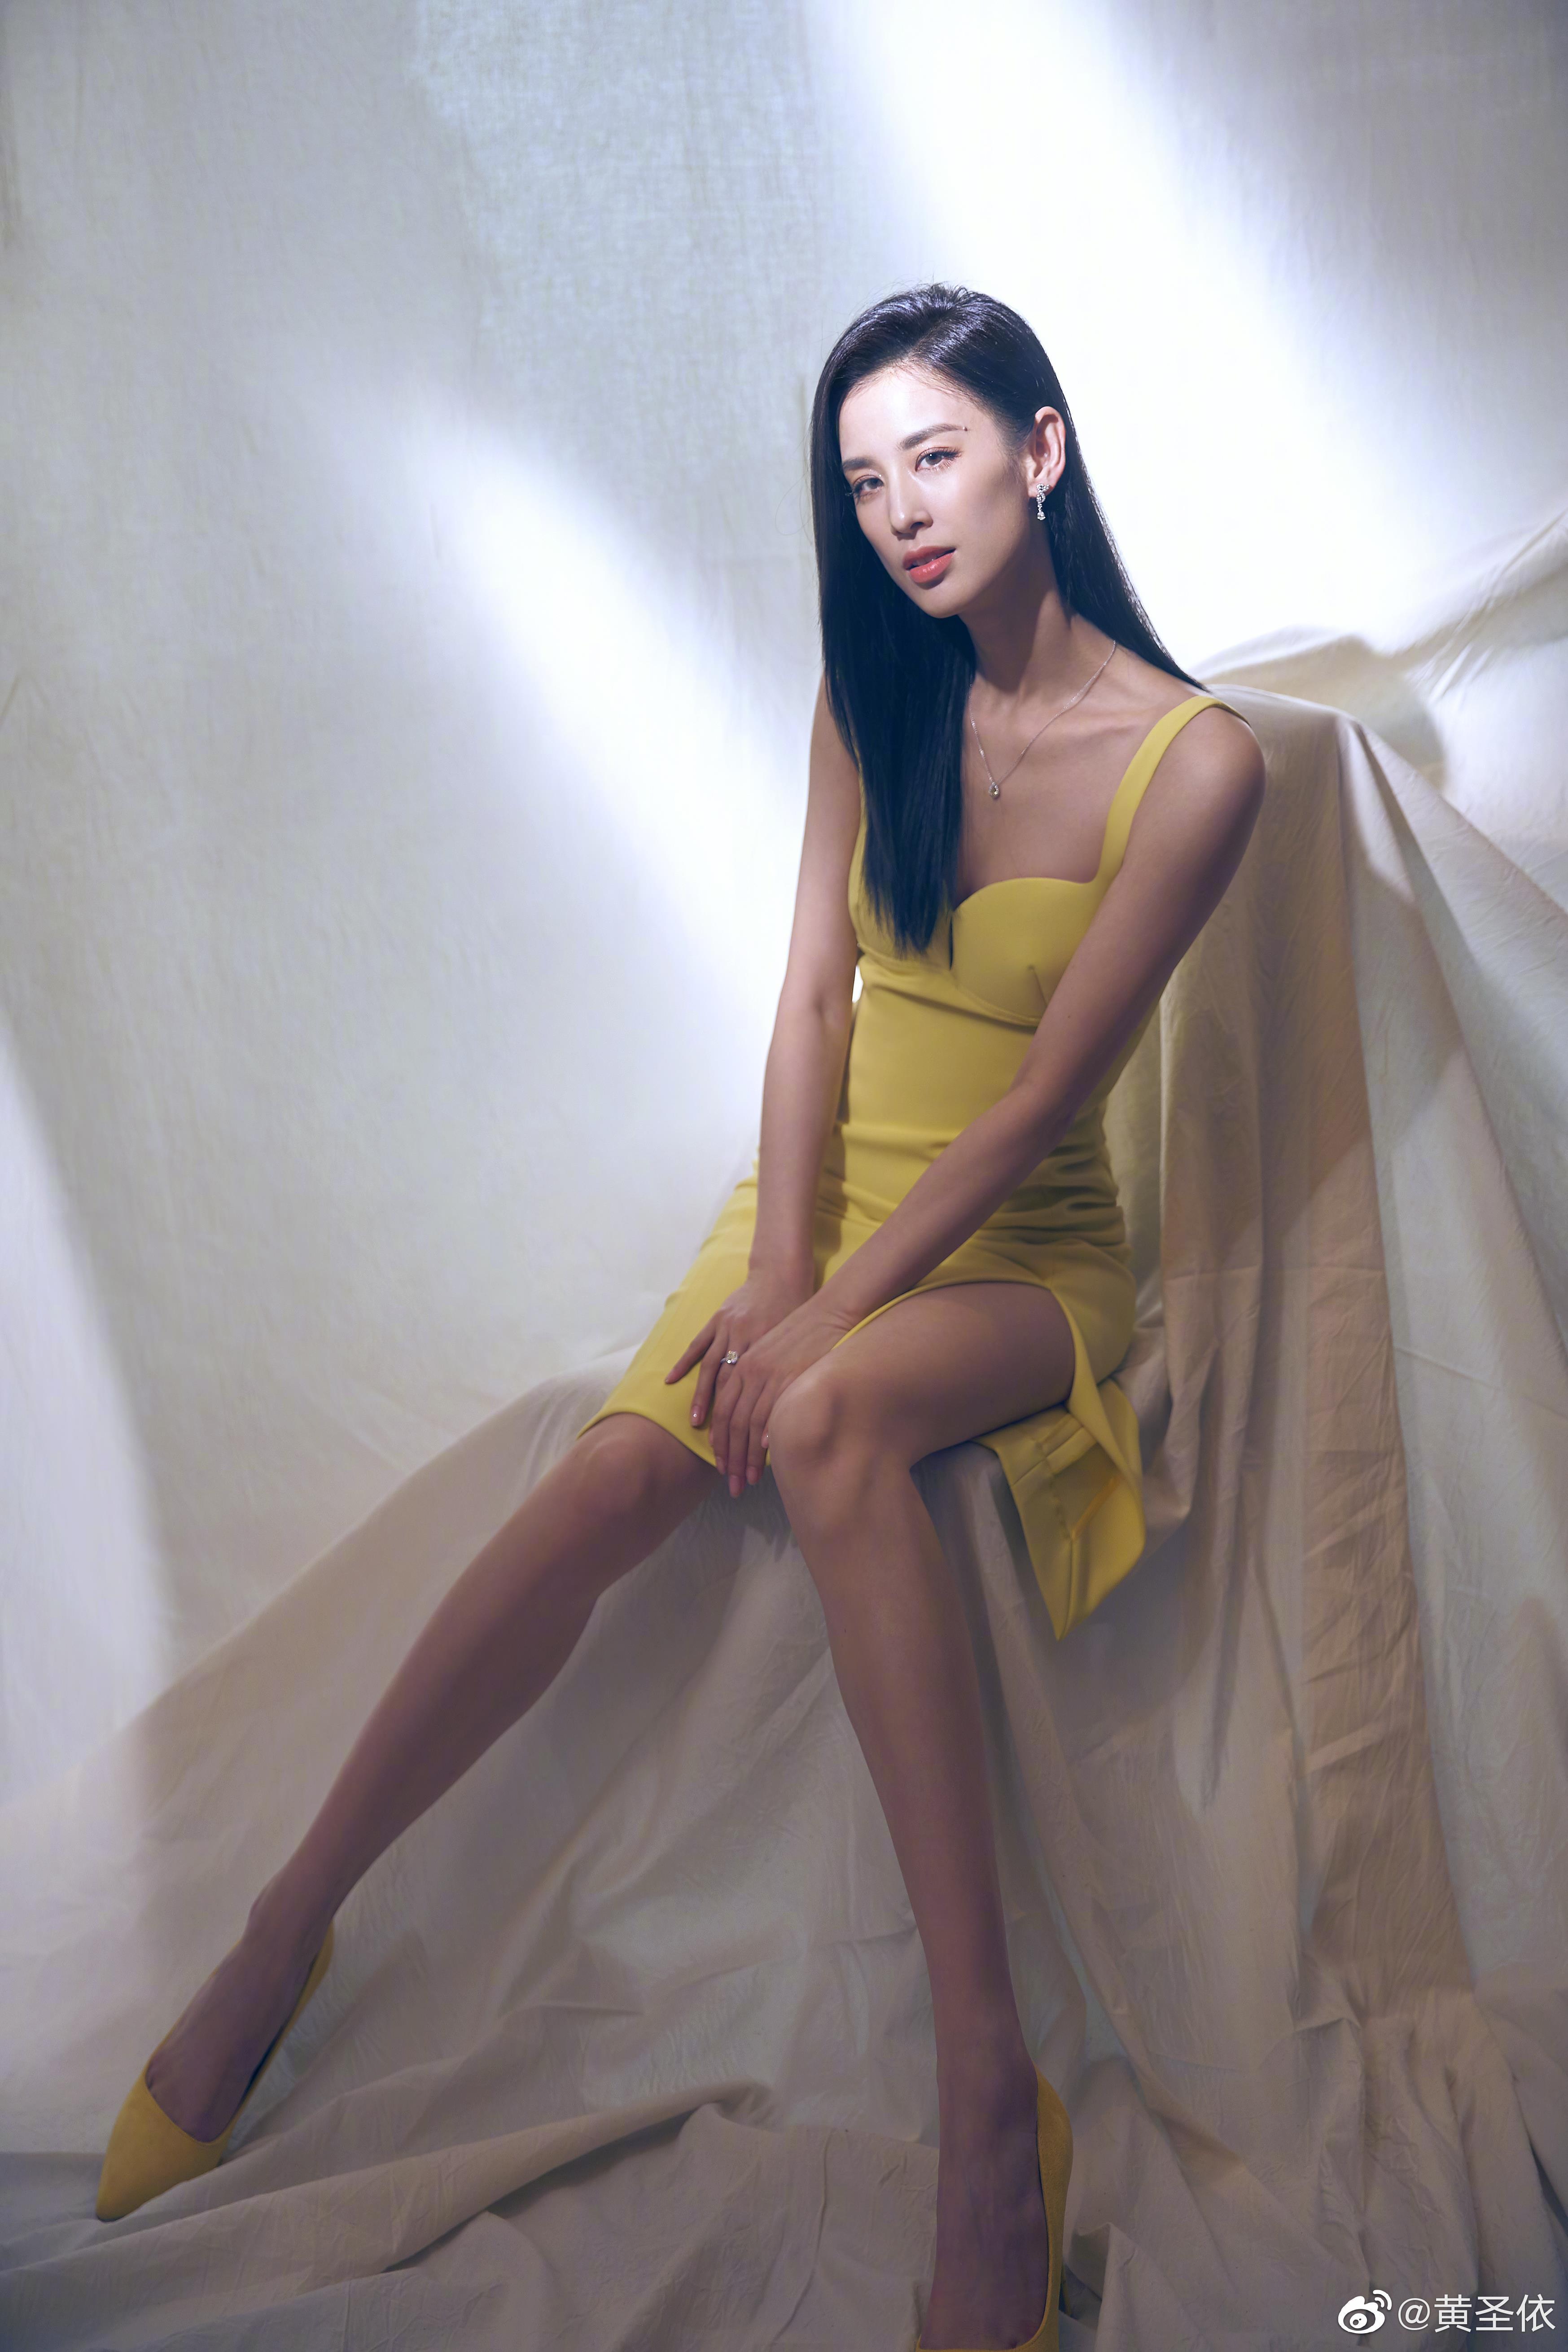 黄圣依身穿淡黄长裙优雅大方 秀美腿肌肉线条超具美感,